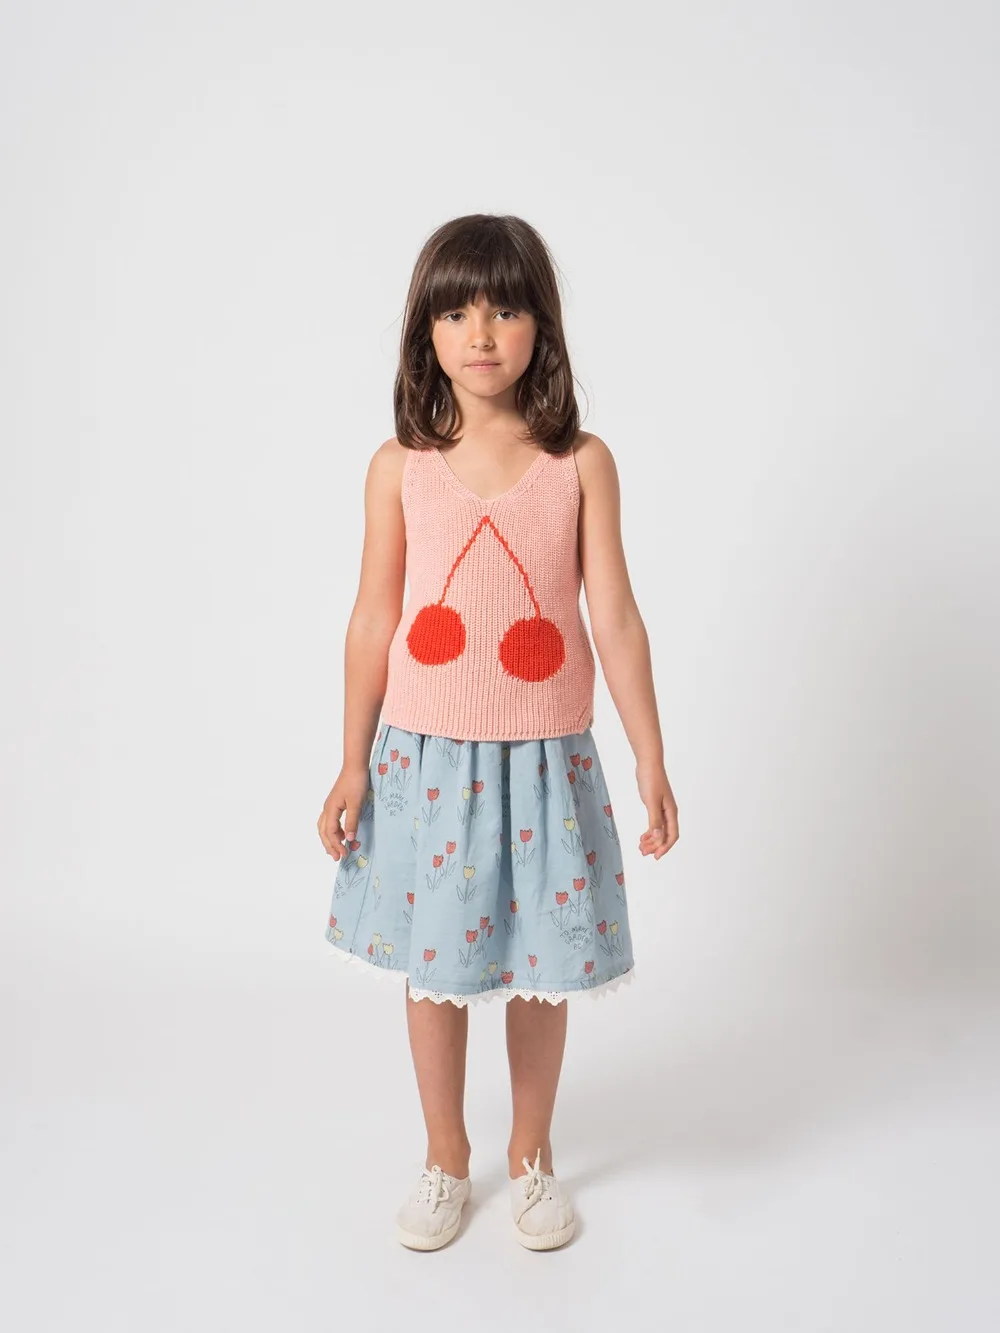 Spot TAO/ г. Летнее платье для девочек высококачественное Хлопковое платье на бретельках одежда для детей платье принцессы Одежда для маленьких девочек новое От 1 до 11 лет